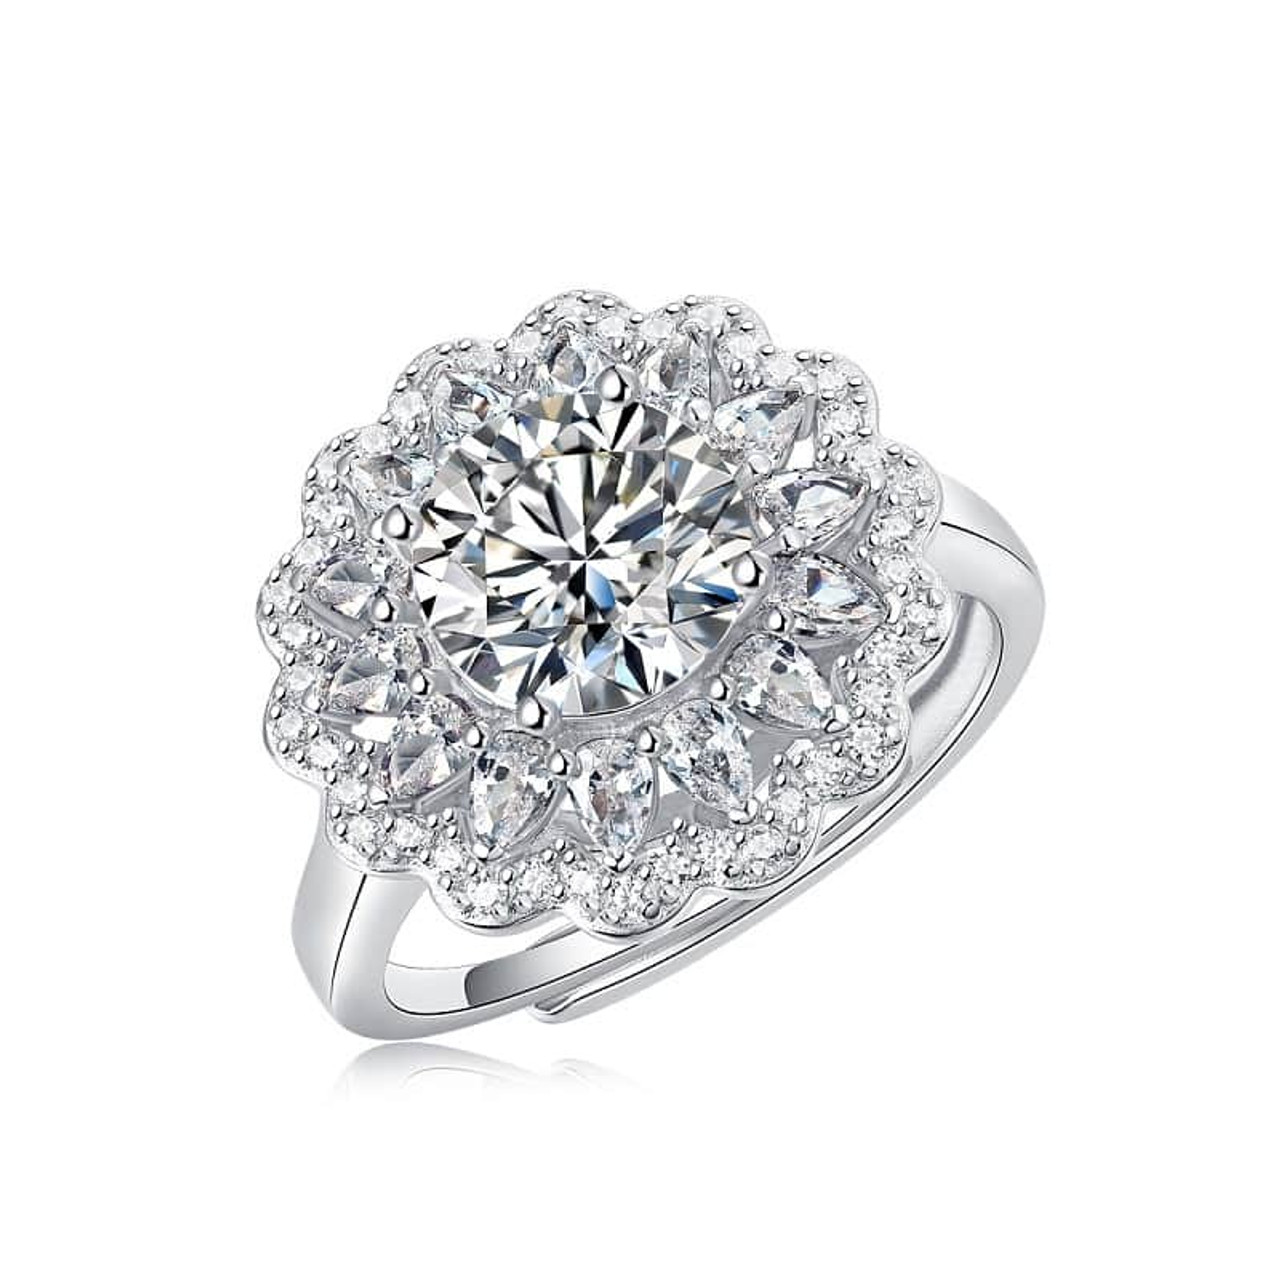 S925 Silver Moissanite Ring Flowers Women's New Trendy Ring Adjustable